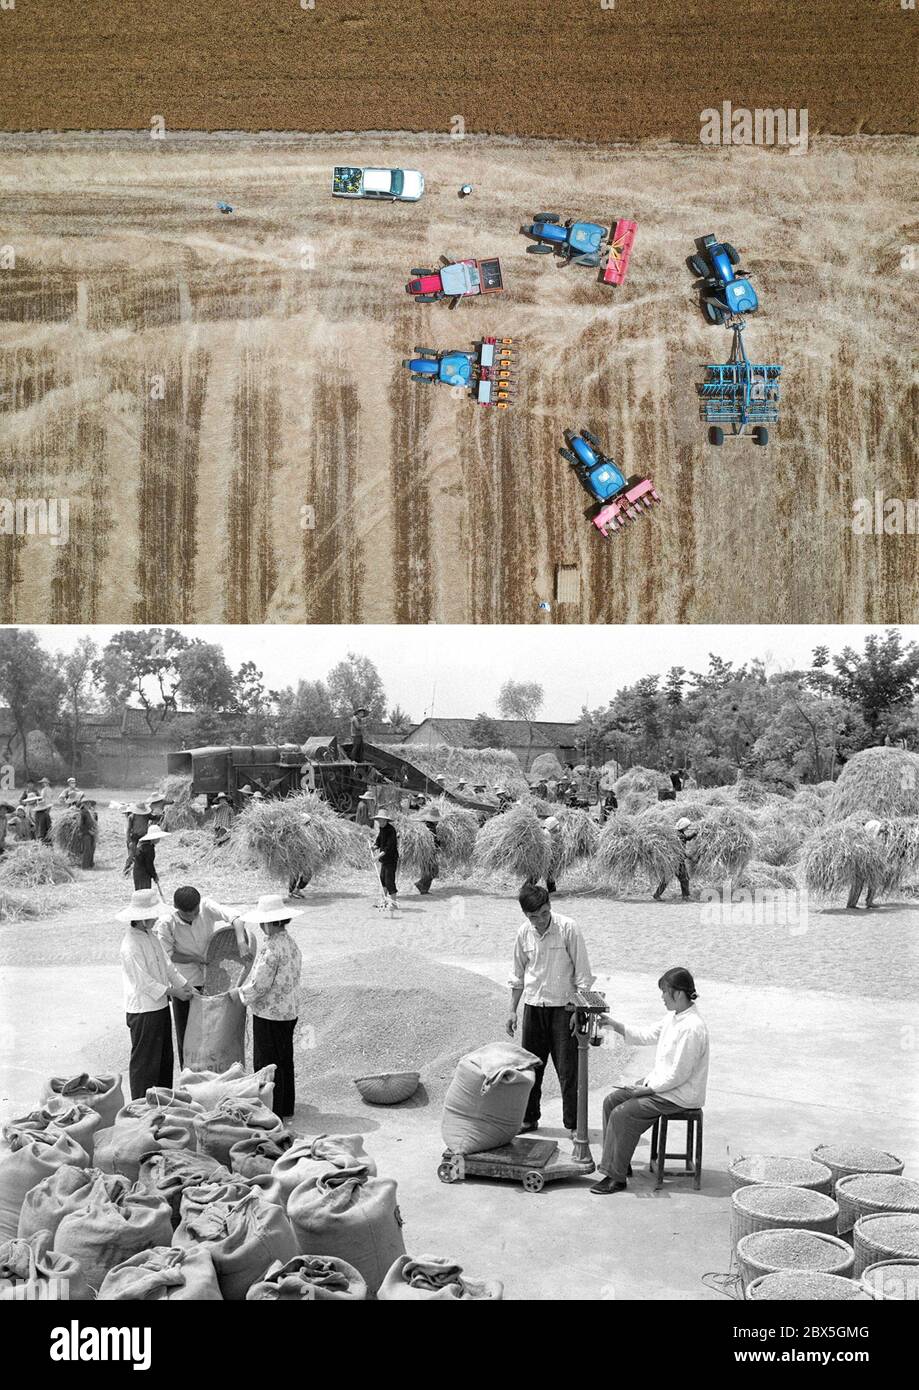 (200605) -- ZHENGZHOU, 5 juin 2020 (Xinhua) -- la photo combinée montre plusieurs machines agricoles qui se rassemblent dans le champ du village d'Anzhong, ville de Xiaoyangying, dans la ville de Dengzhou, province du Henan en Chine centrale (UP, photo aérienne prise le 26 mai 2020 par Feng Dapeng), Et les agriculteurs qui battent du blé dans le comté de Guangji, dans la province de Hubei, en Chine centrale (en bas, photo du fichier publiée le 15 juin 1977 par Xinhua). Depuis la fondation de la République populaire de Chine, le niveau de mécanisation agricole en Chine s'est constamment amélioré et la production céréalière a augmenté de façon constante. Les informations pi récentes et de fichier Banque D'Images